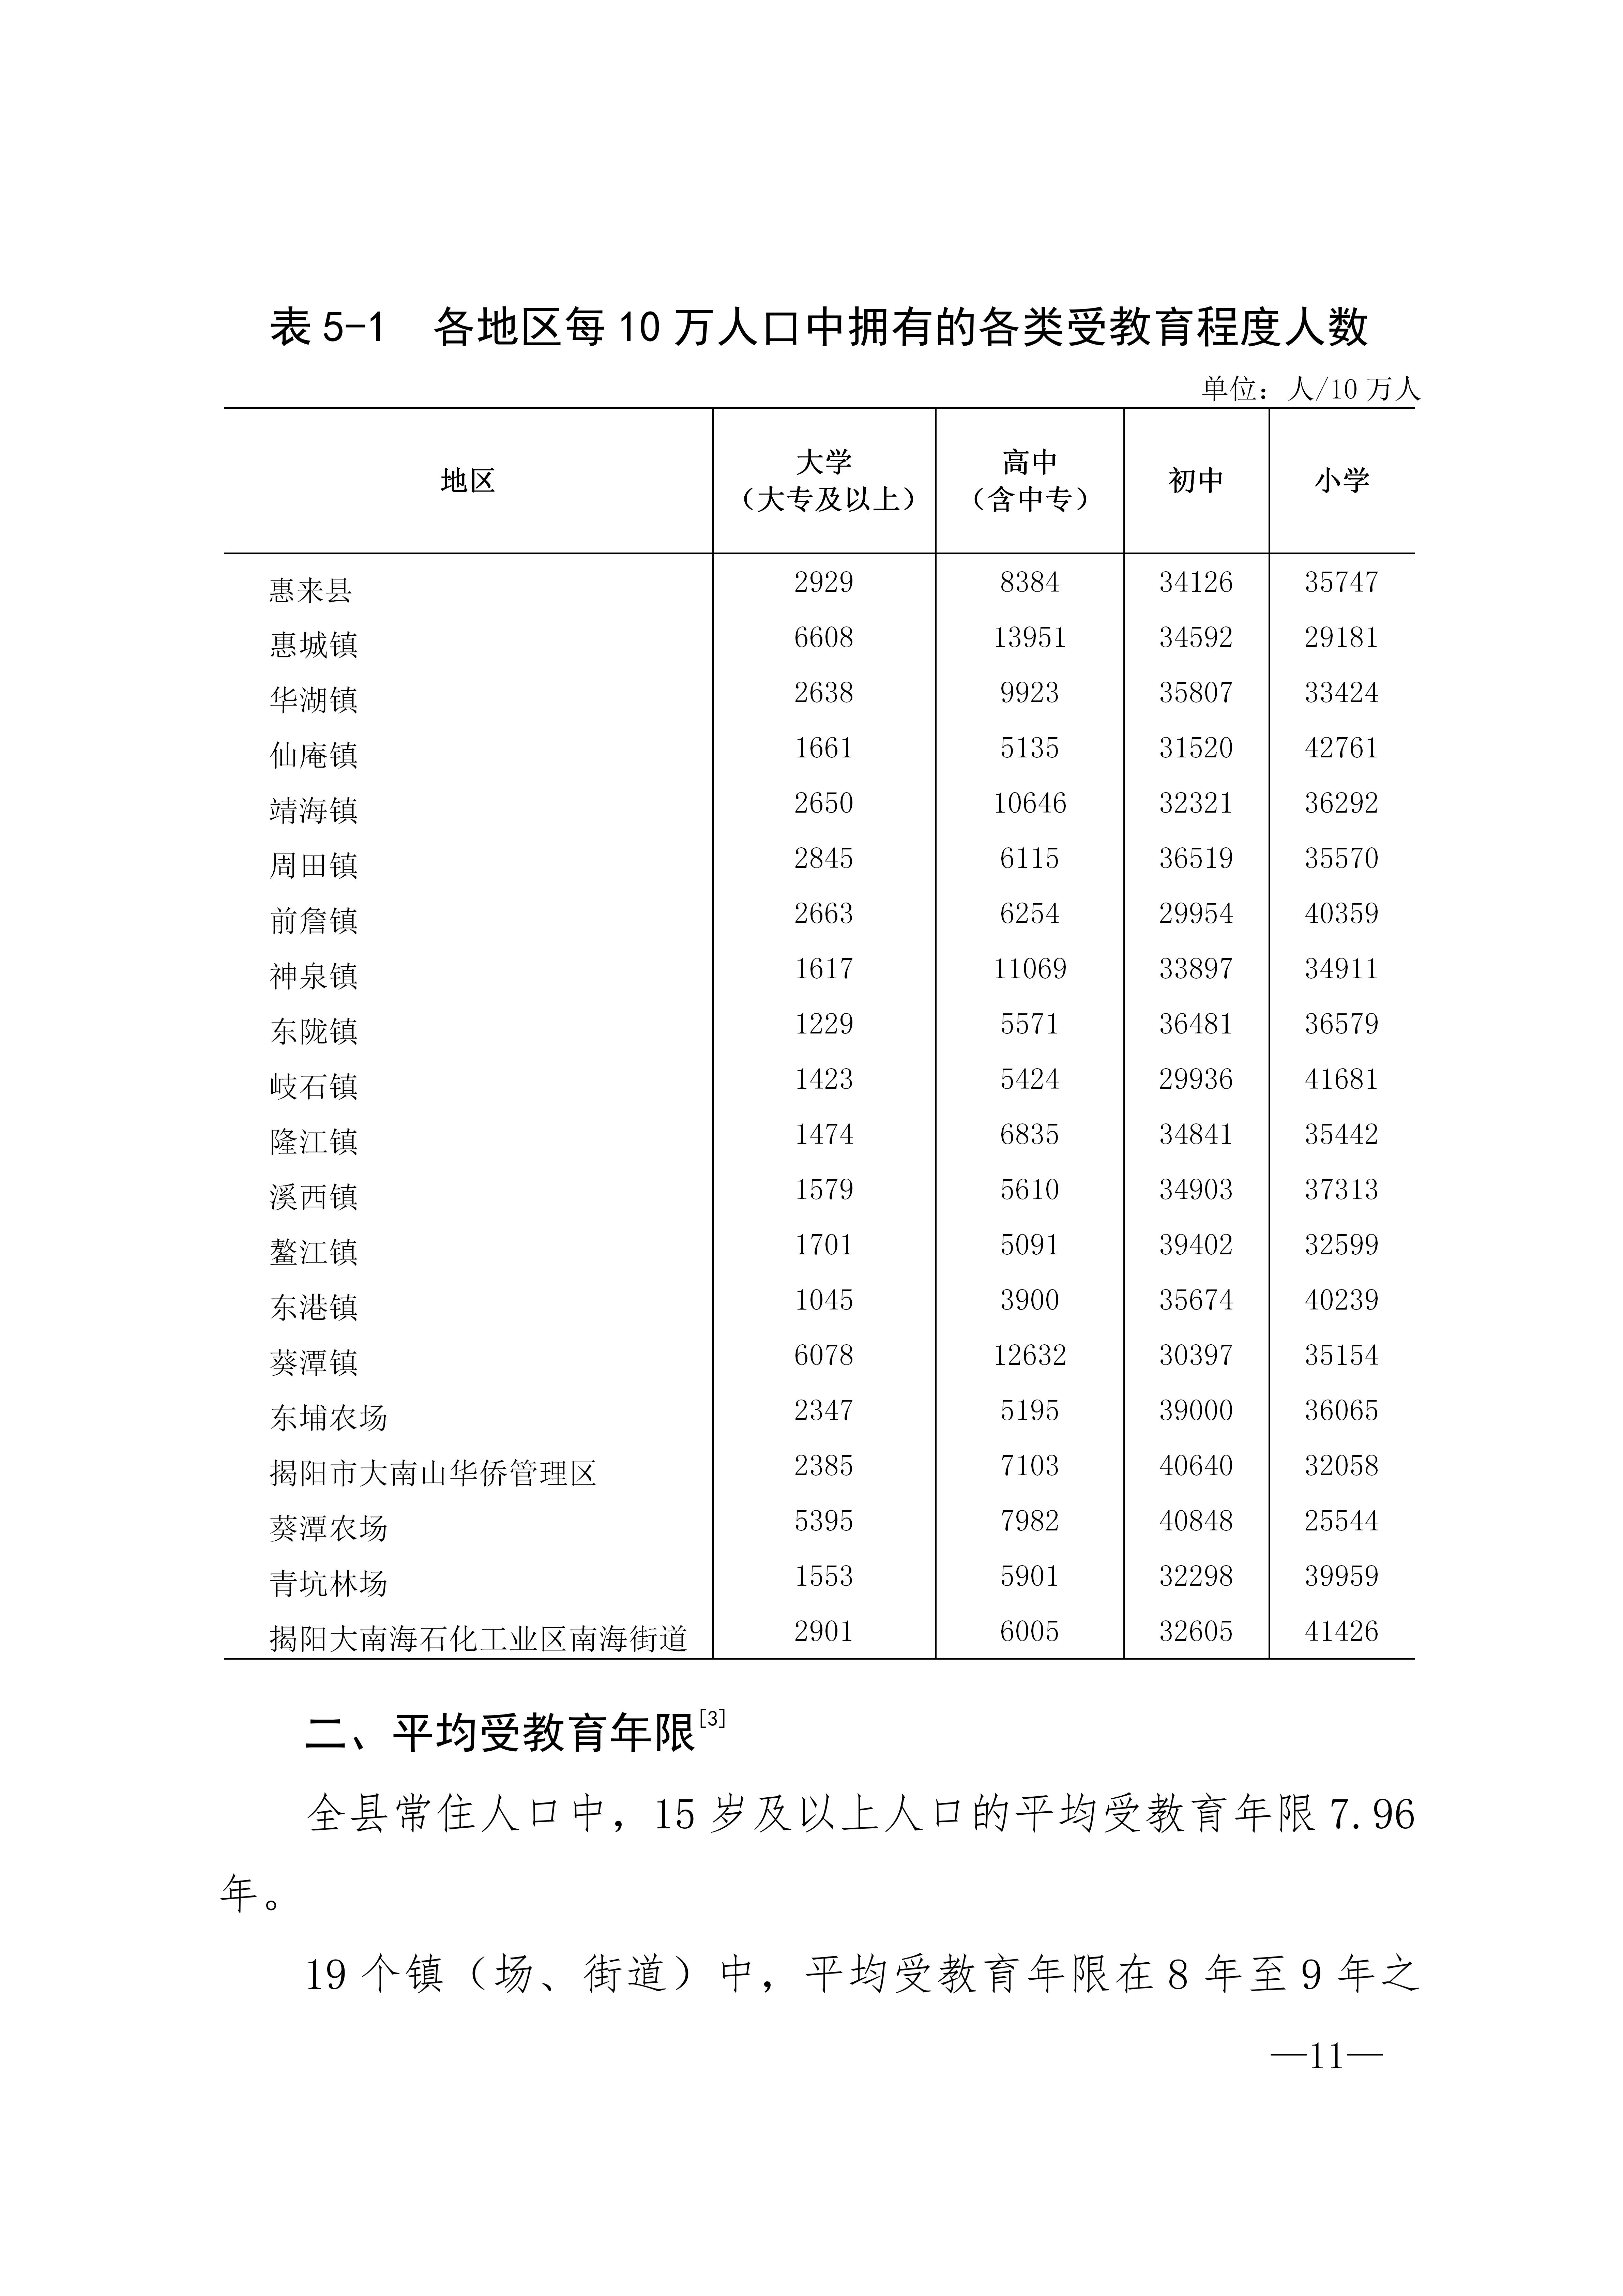 惠来县第七次全国人口普查公报_11.jpg